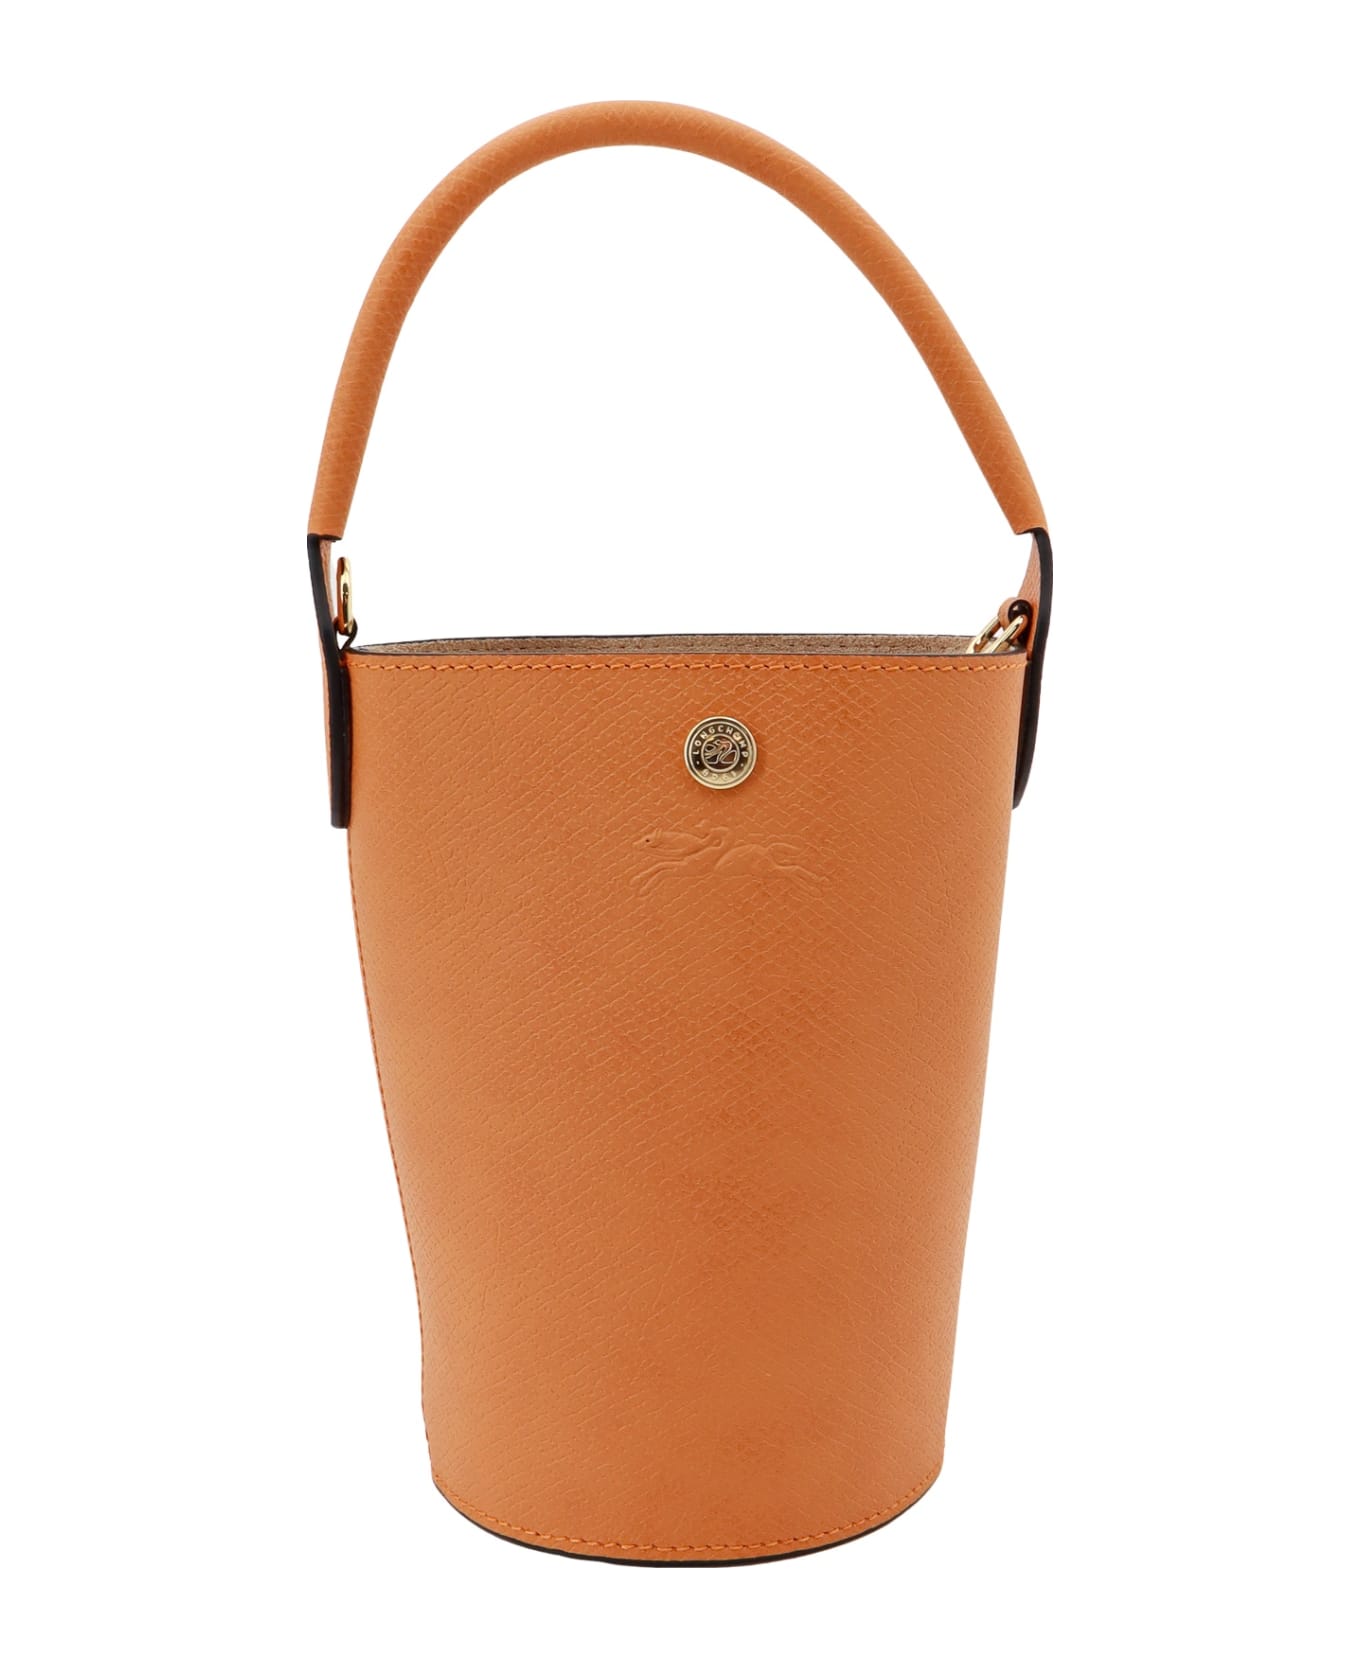 Longchamp Re Bucket Bag トートバッグ